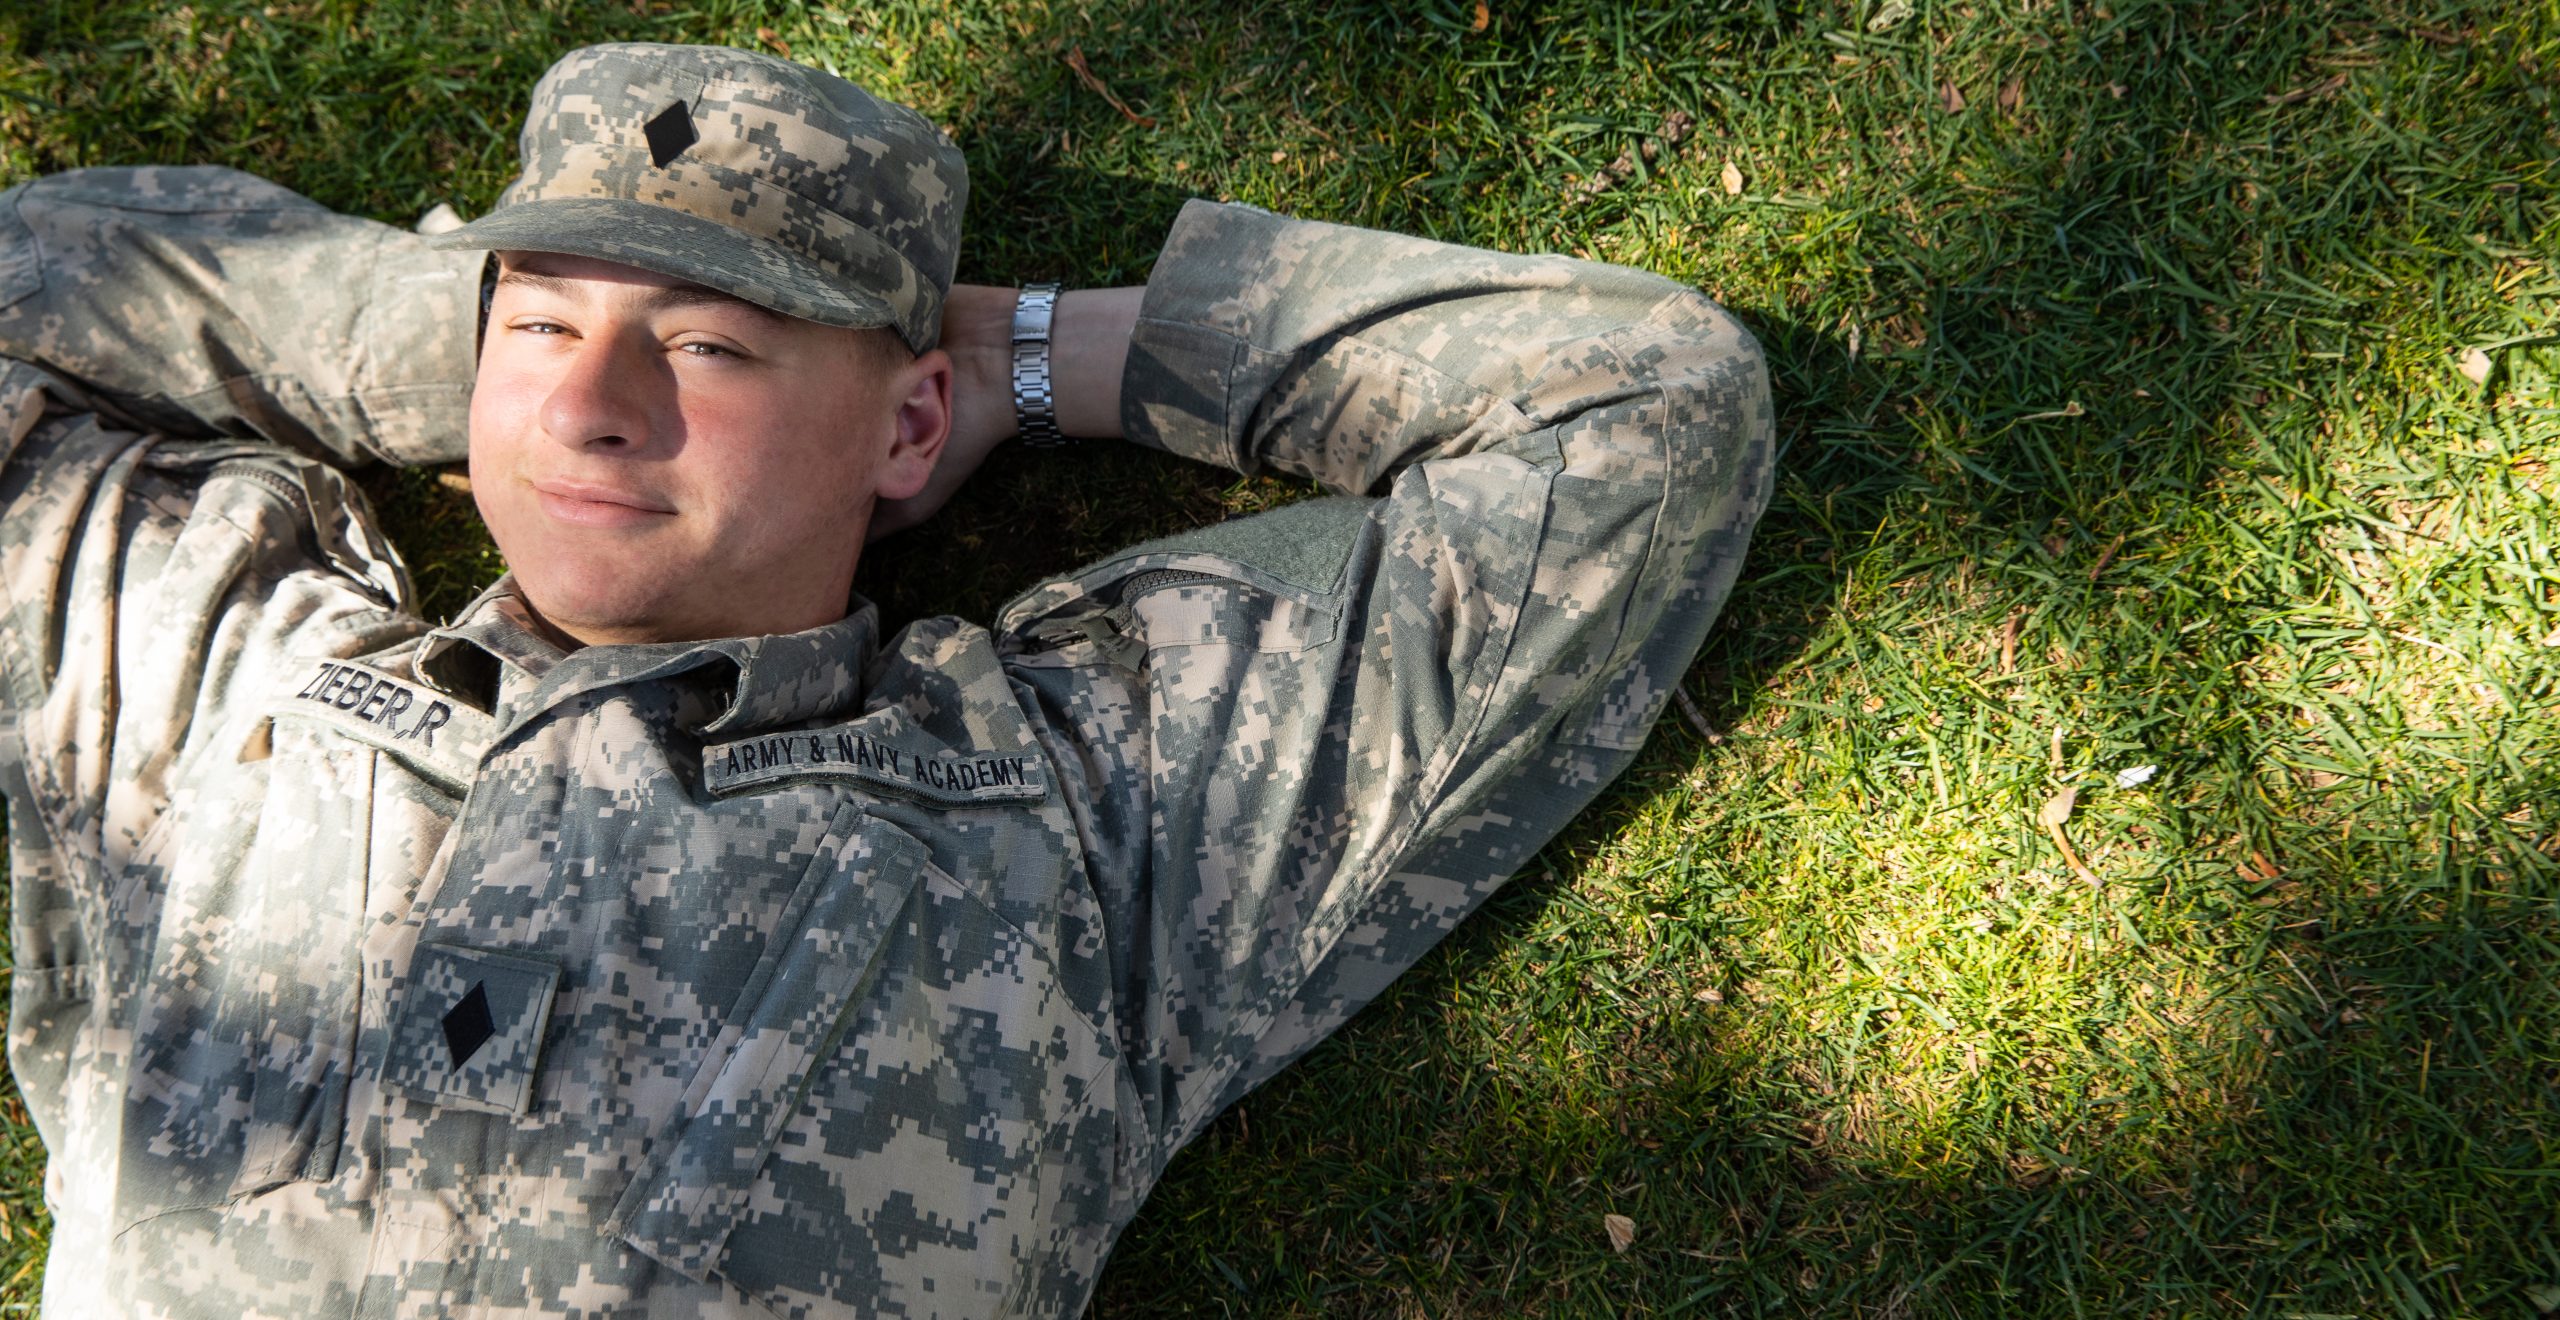 Cadet Relaxing on Grass